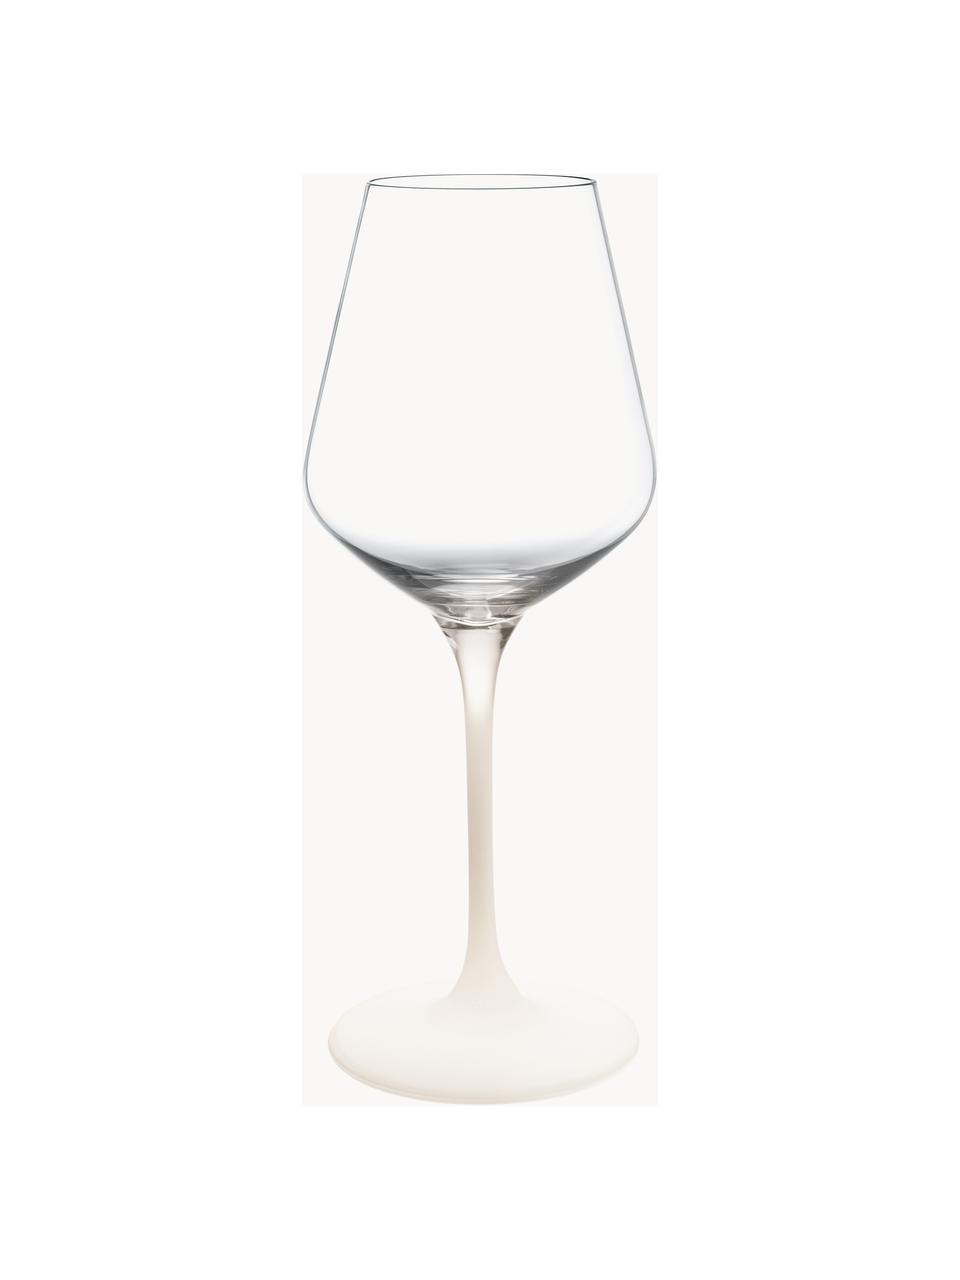 Kieliszek do czerwonego wina ze szkła kryształowego Manufacture Rock, 4 szt., Szkło kryształowe, Transparentny, biały, Ø 9 x W 23 cm, 410 ml